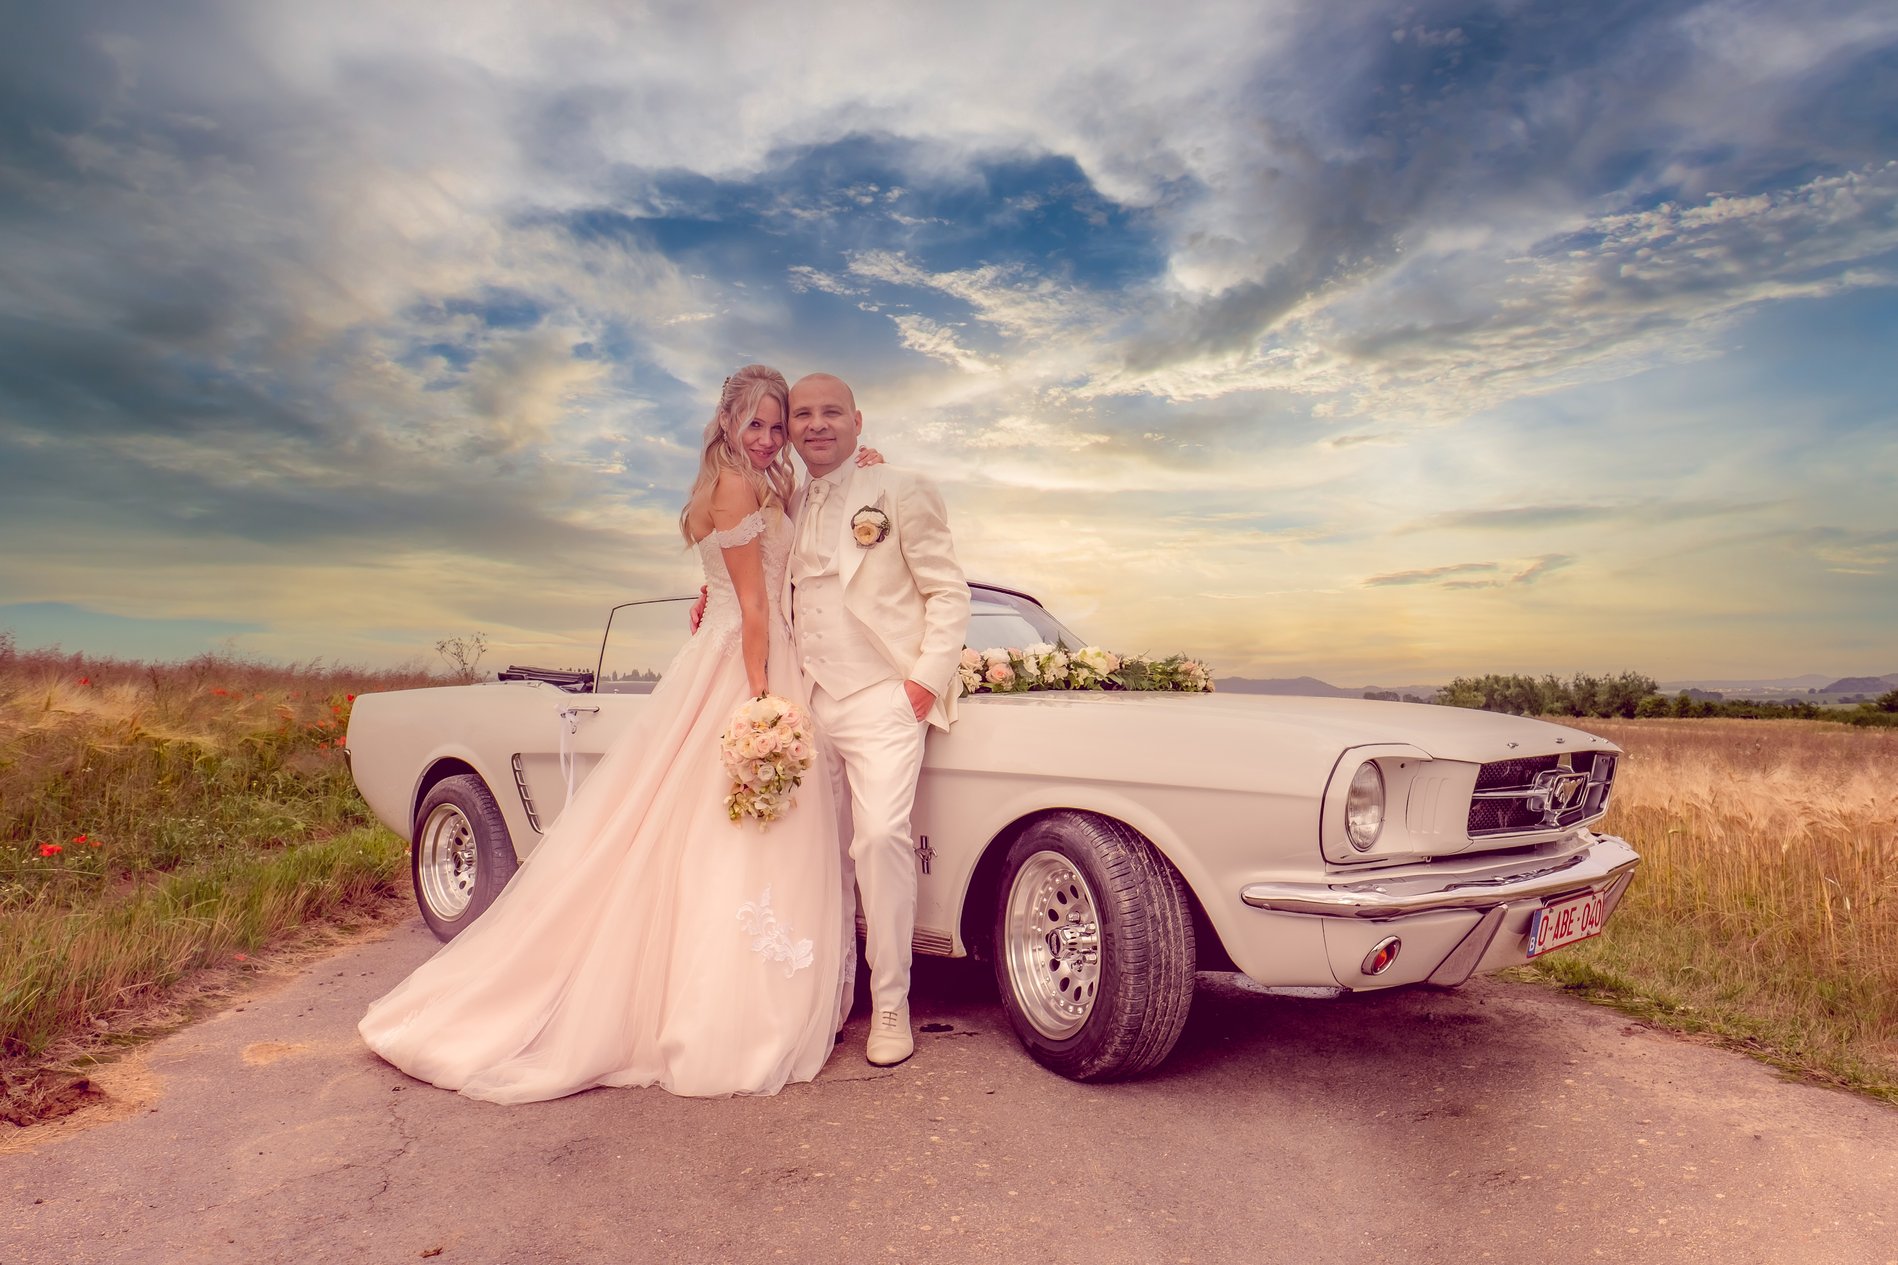 photographe professionnel mariage, photo de couple, photo mairage, sorite d'église, robe de mariée